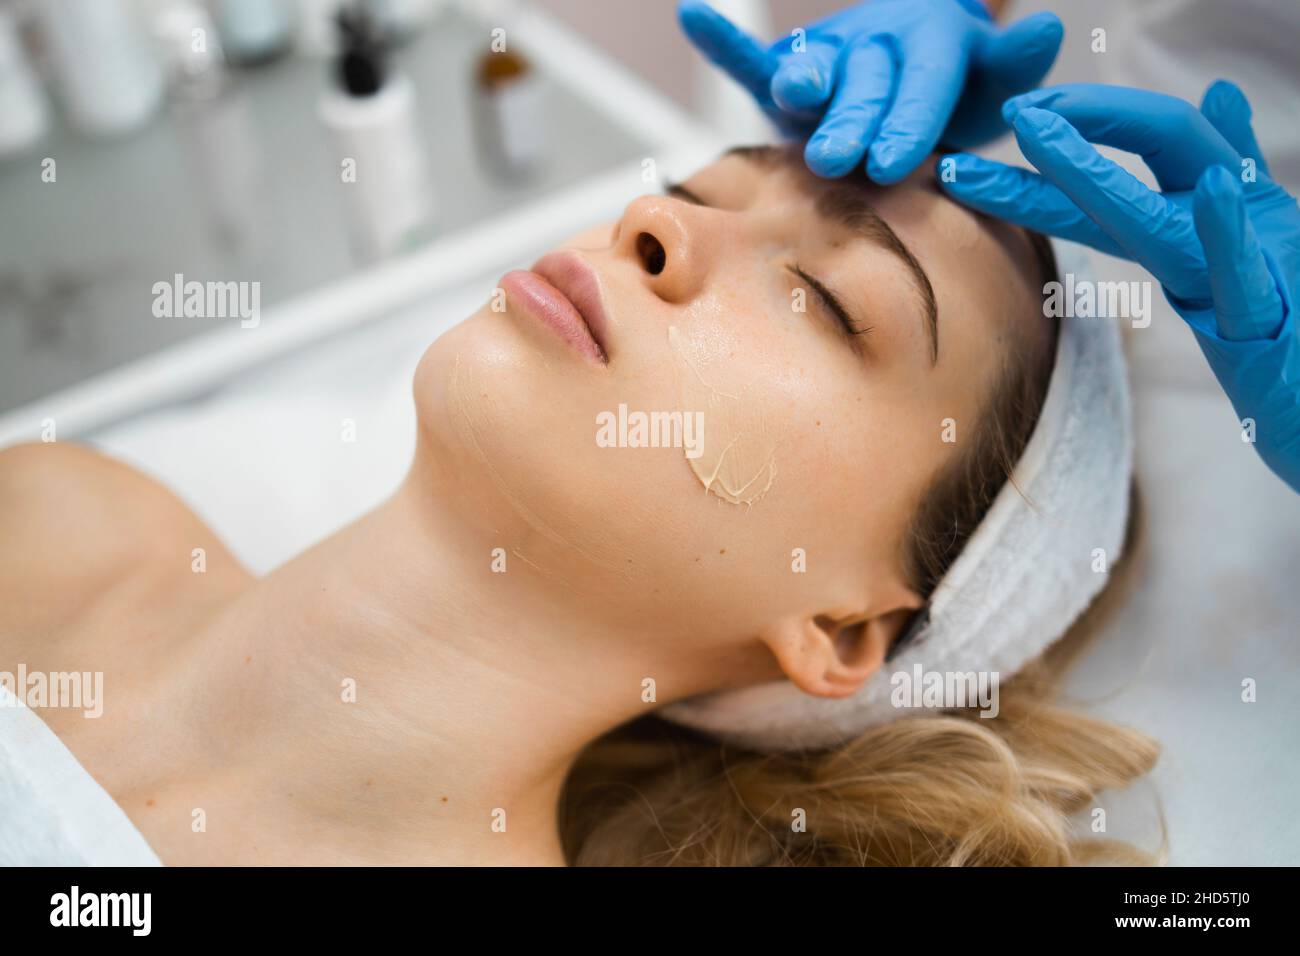 Les mains du cosmétologue appliquent de la crème sur le visage de la femme.Femme massant la peau du visage du client Banque D'Images